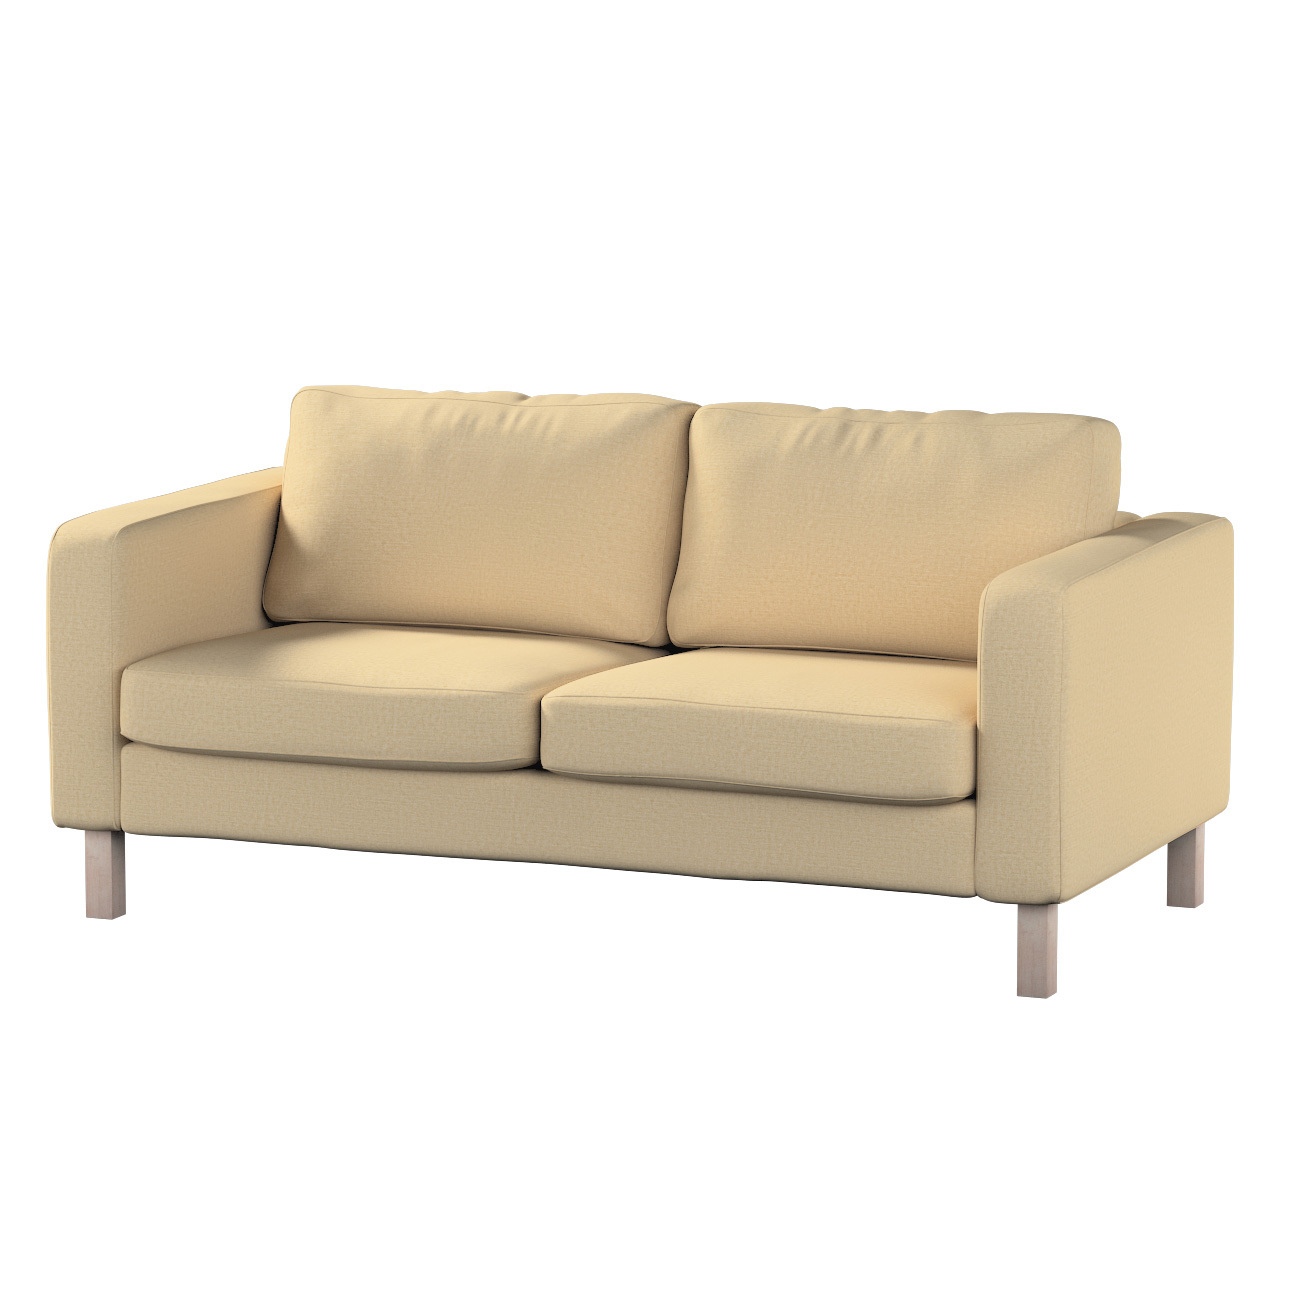 Bezug für Karlstad 2-Sitzer Sofa nicht ausklappbar, sandfarben, Sofahusse, günstig online kaufen